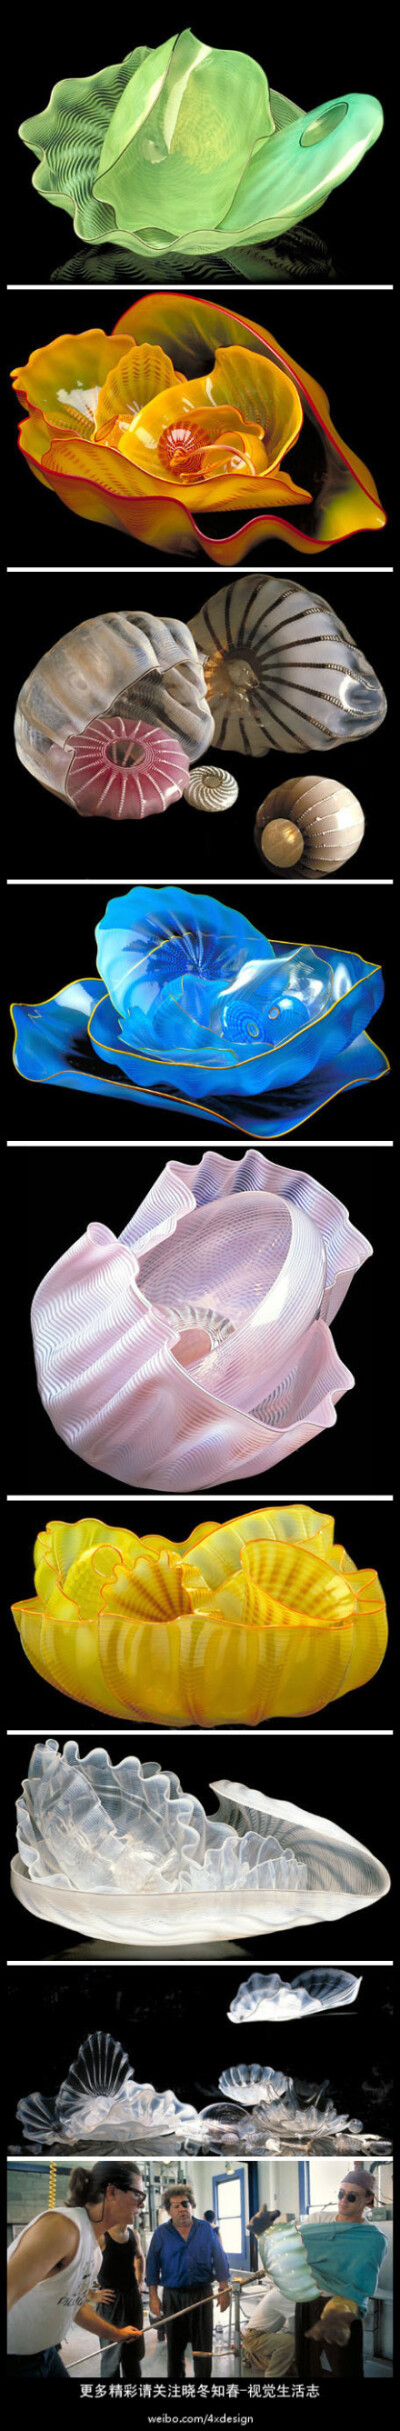 玻璃变形记----海底世界是Dale Chihuly 惯用设计元素之一。这组作品他将之命名为：Sea Forms. 海的形态。非常优雅美妙，你似乎能感觉到TA们正在海底舒展缓慢的悬浮摆动。更多精彩请关注@晓冬知春-视觉生活志